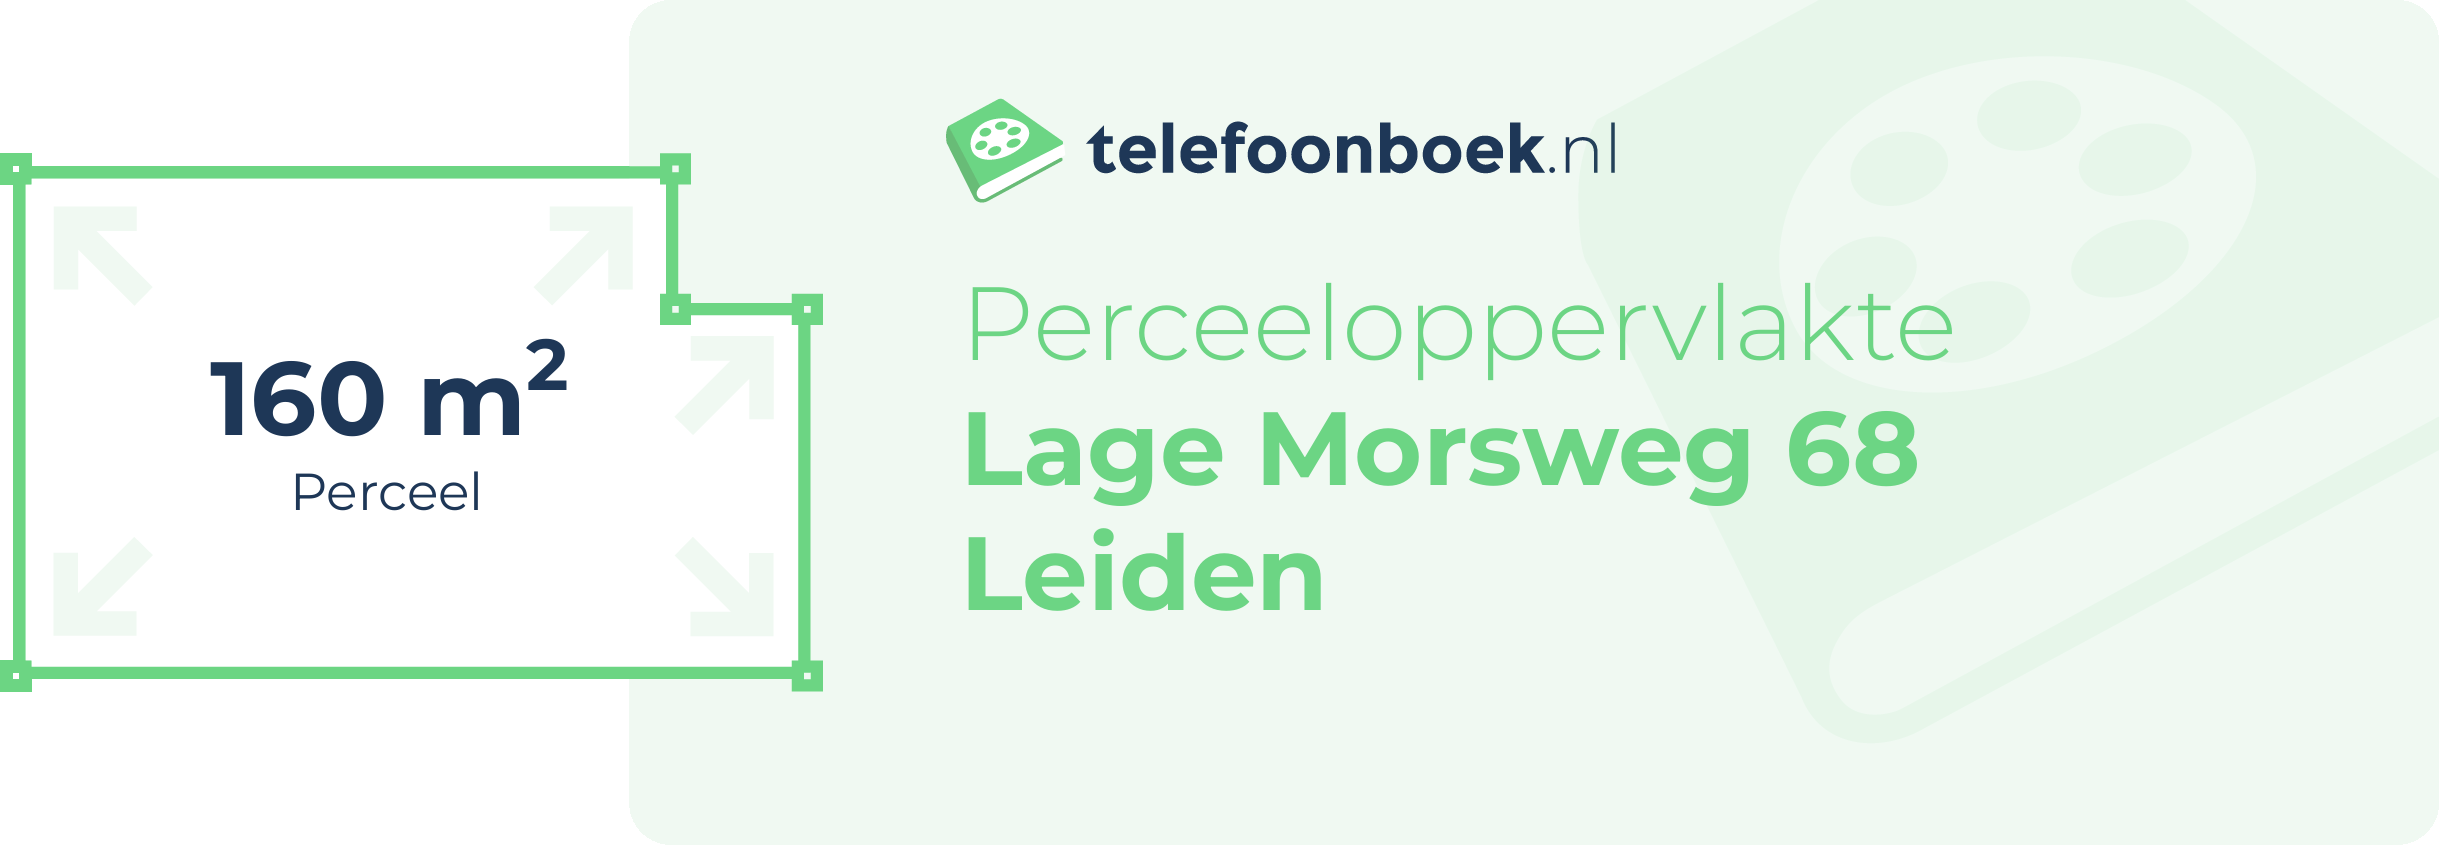 Perceeloppervlakte Lage Morsweg 68 Leiden